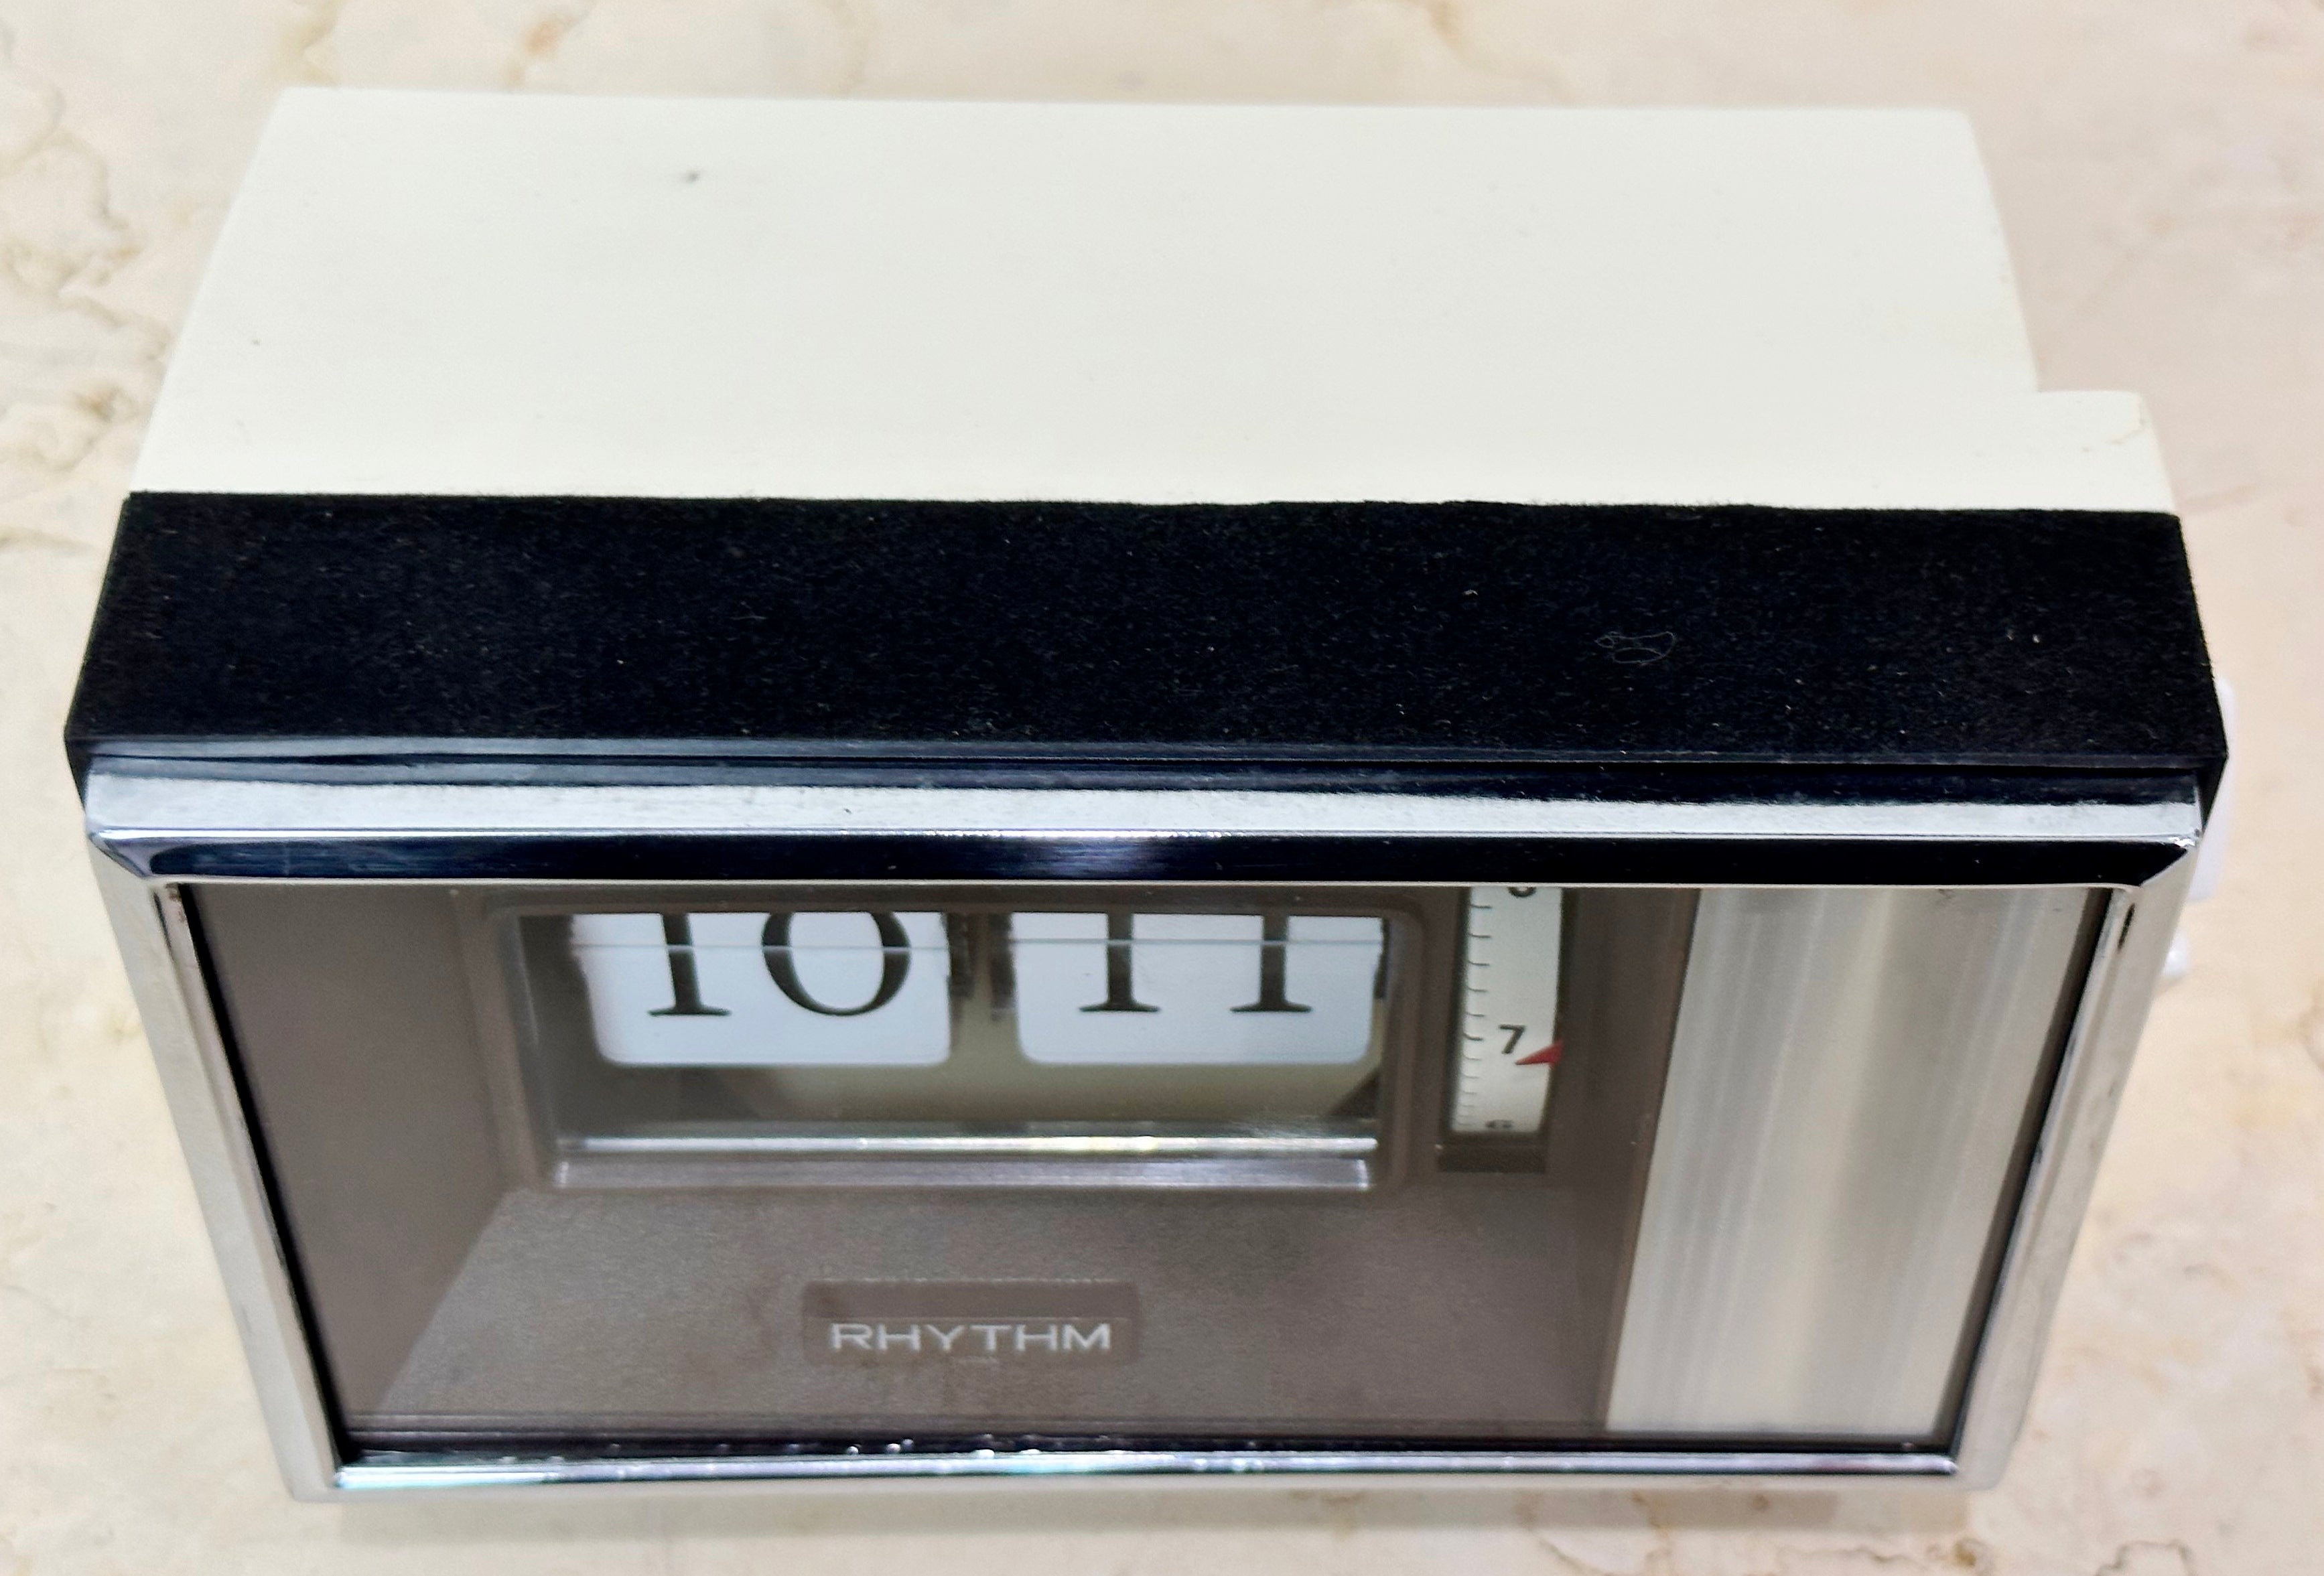 Vintage Retro Perpetual Rhythm Alarm FLIP Desk Clock | eXibit collection